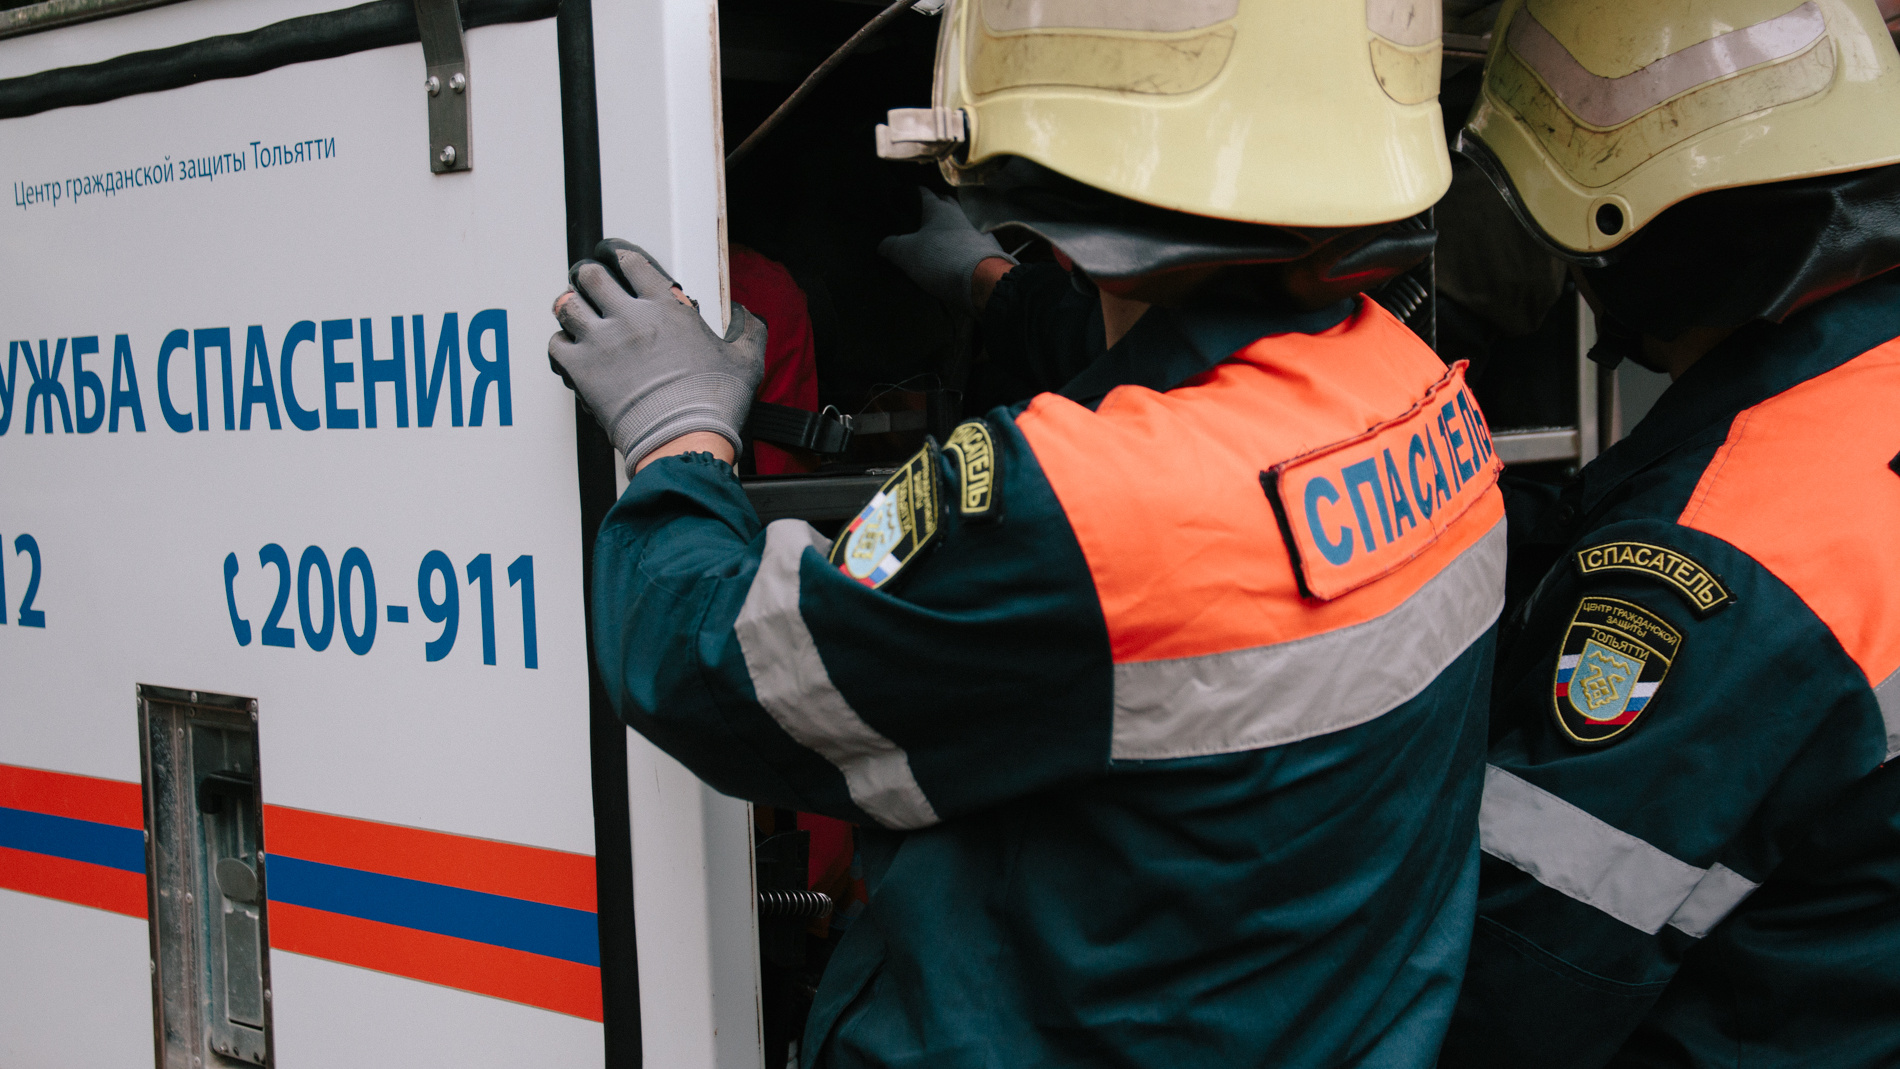 Очевидцы: в Тольятти дерево упало на человека, проломив железный навес